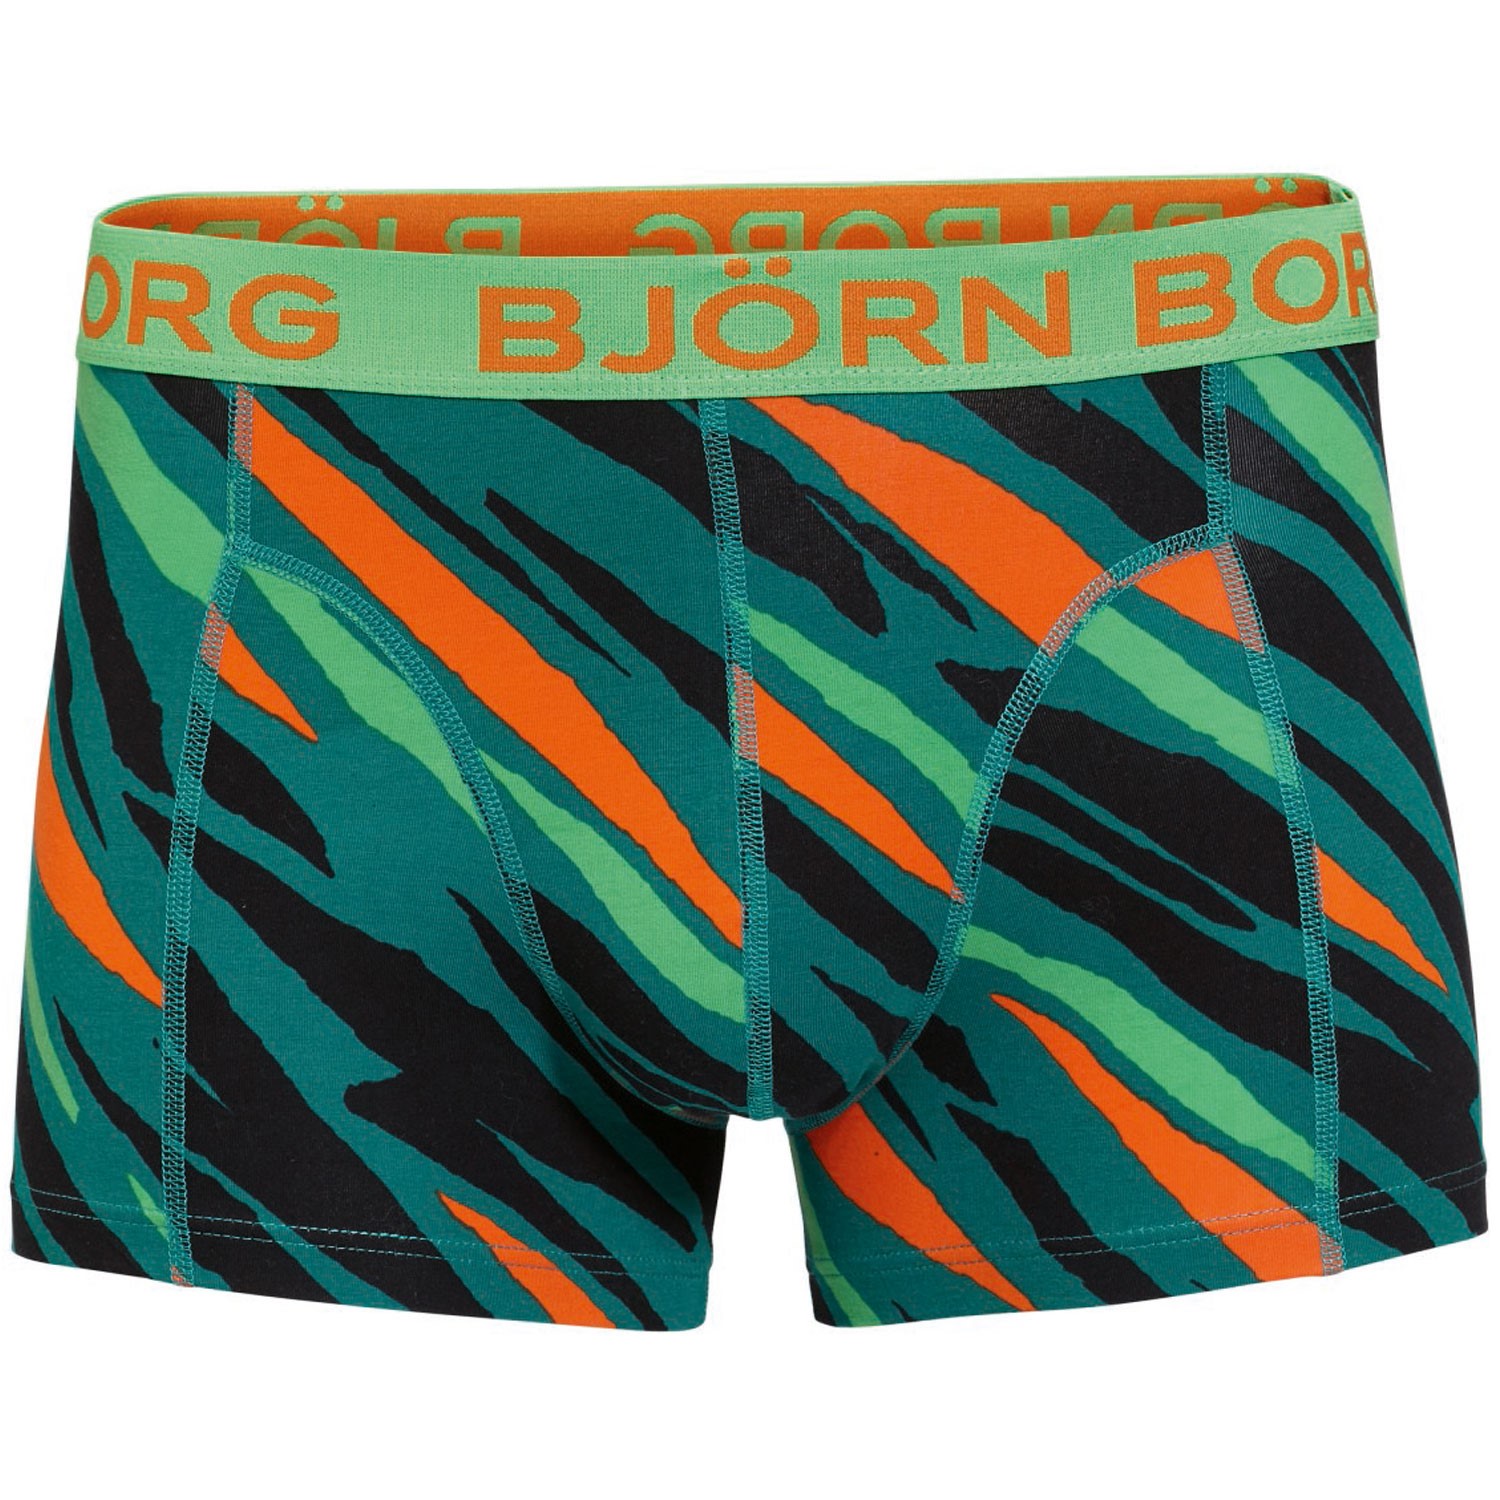 Björn Borg Short Shorts Wild Thing